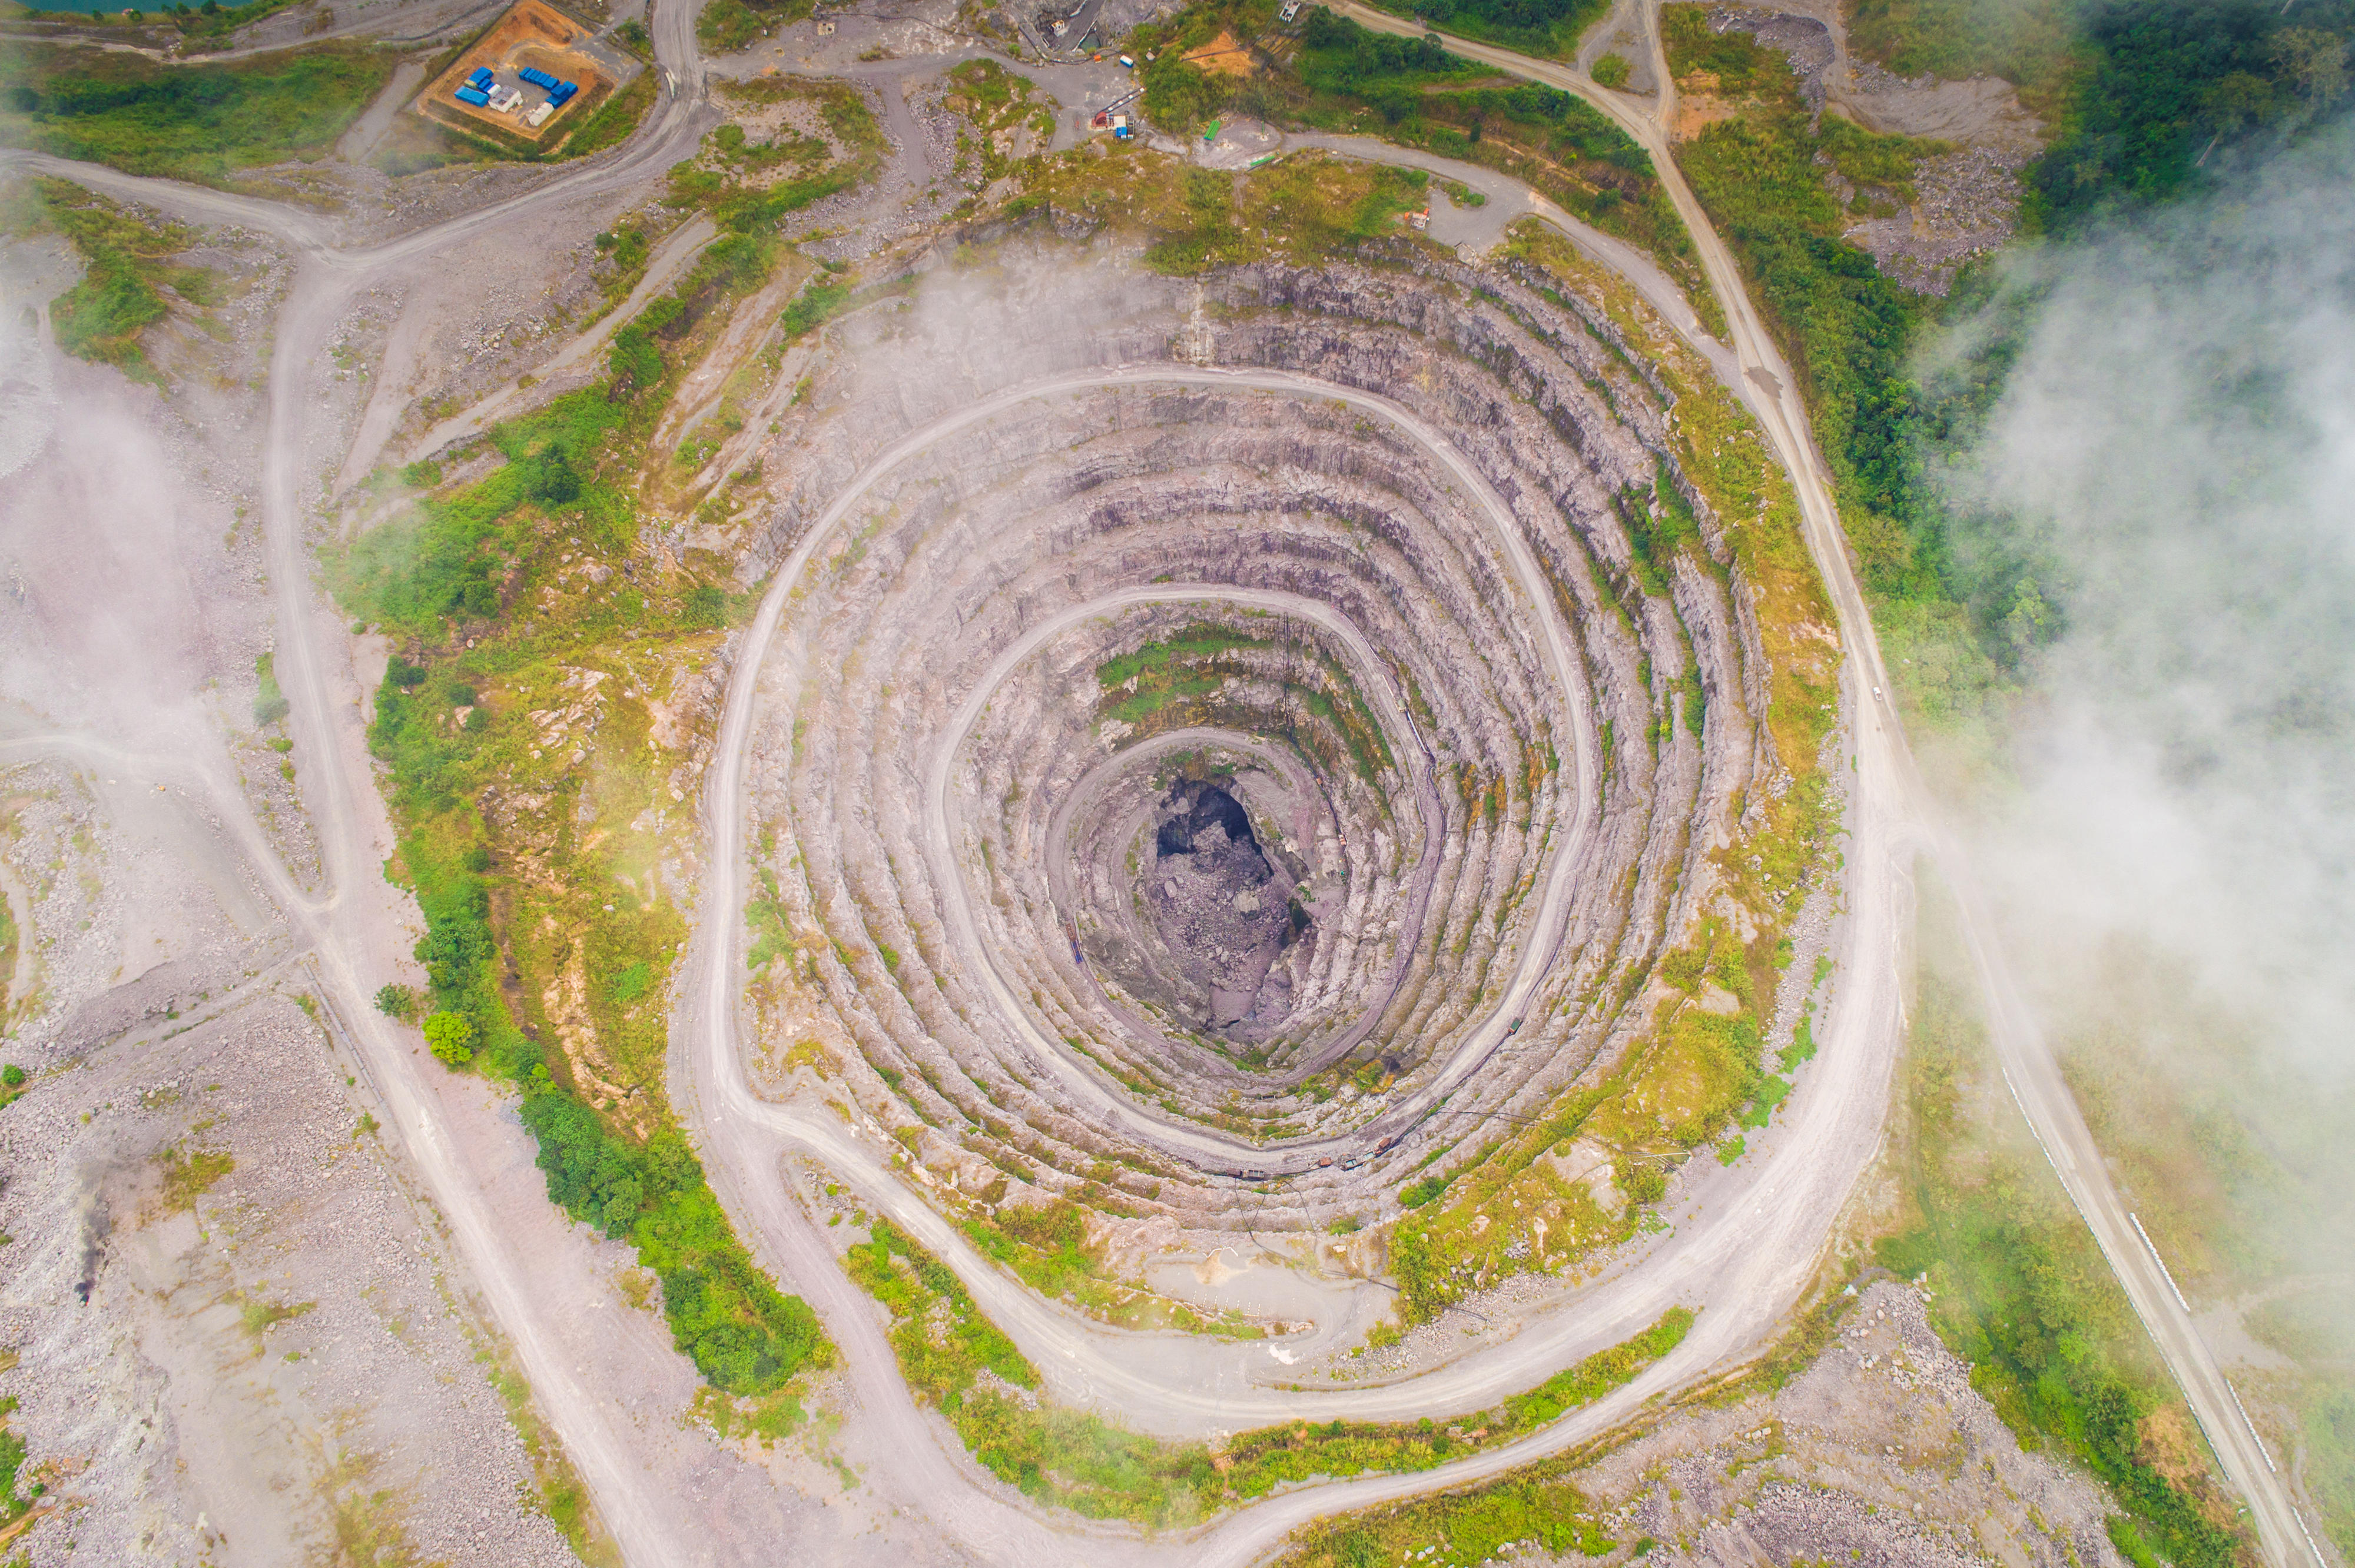 Diamond mine in Liberia